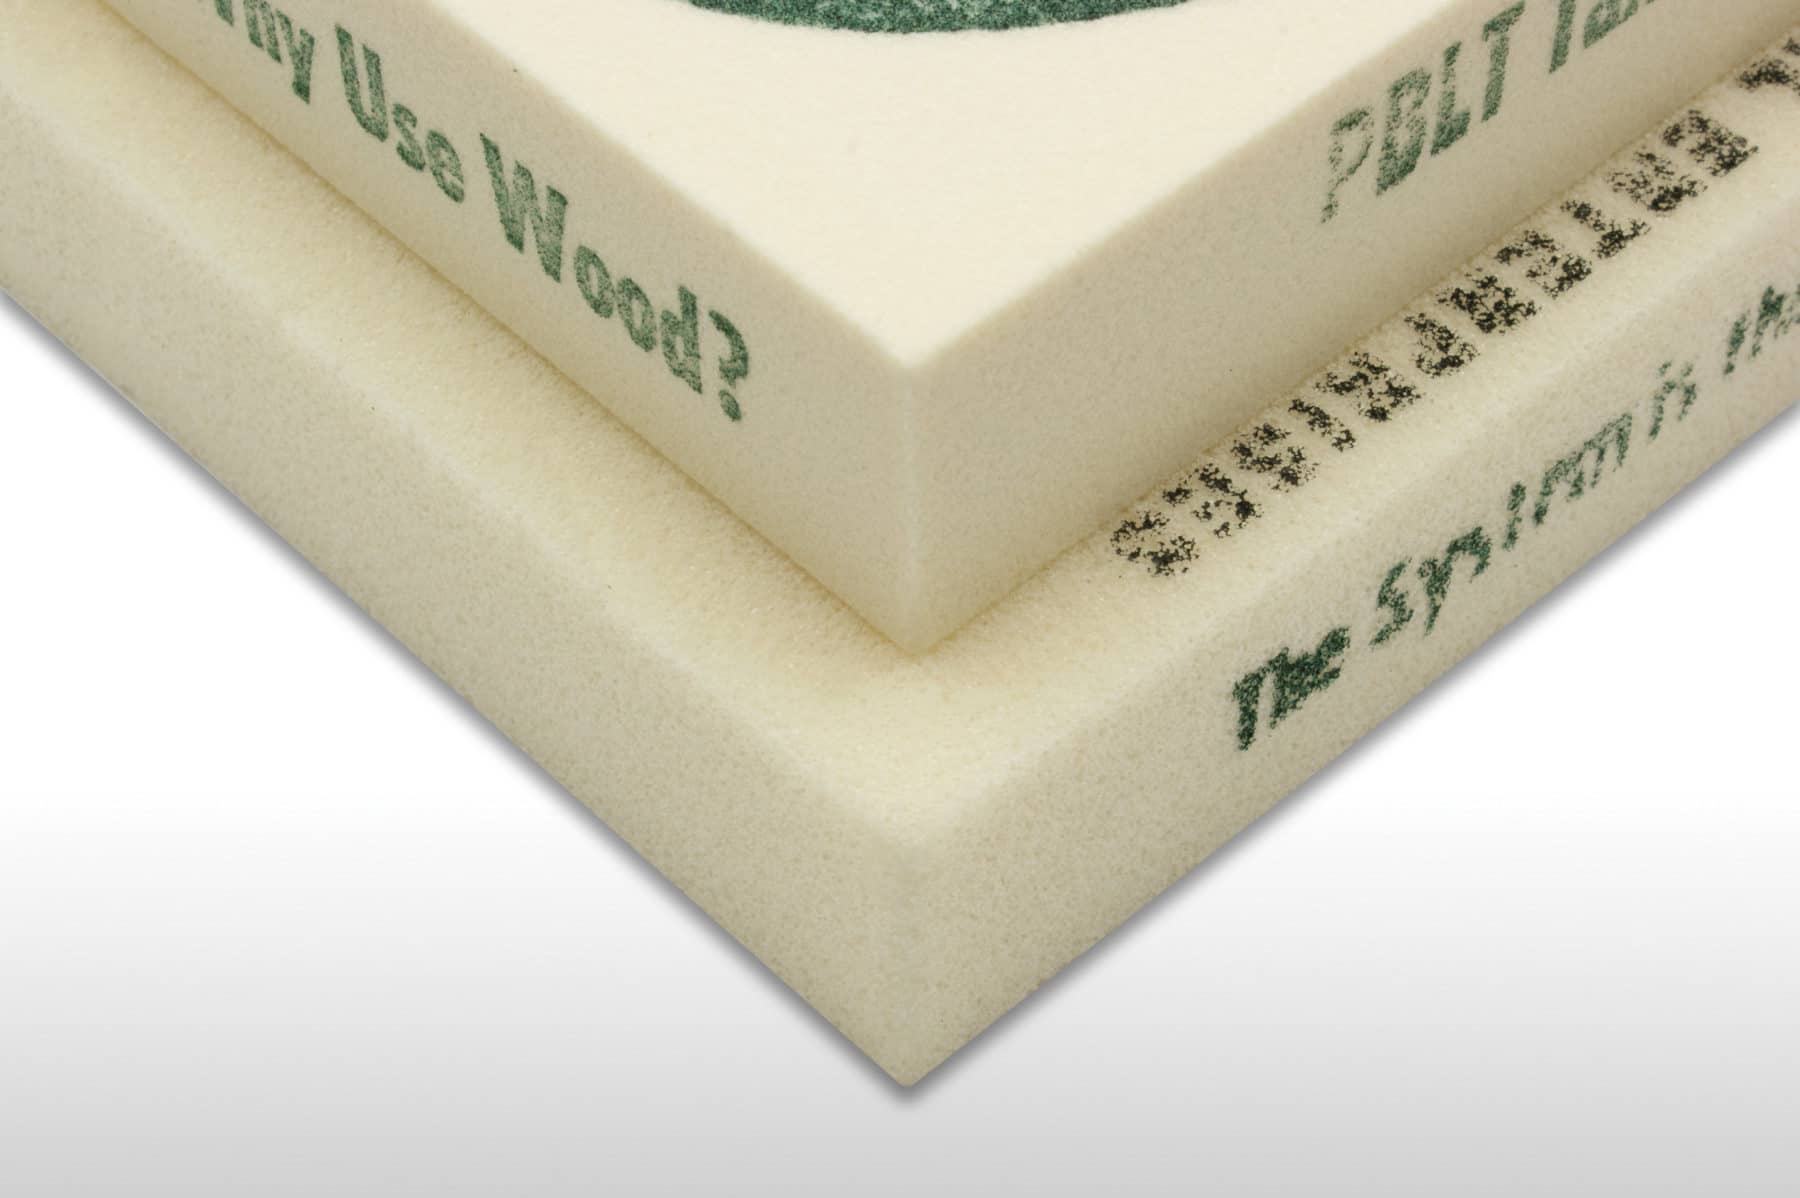 Foam Board - Foamboard Sheet - Polymershapes